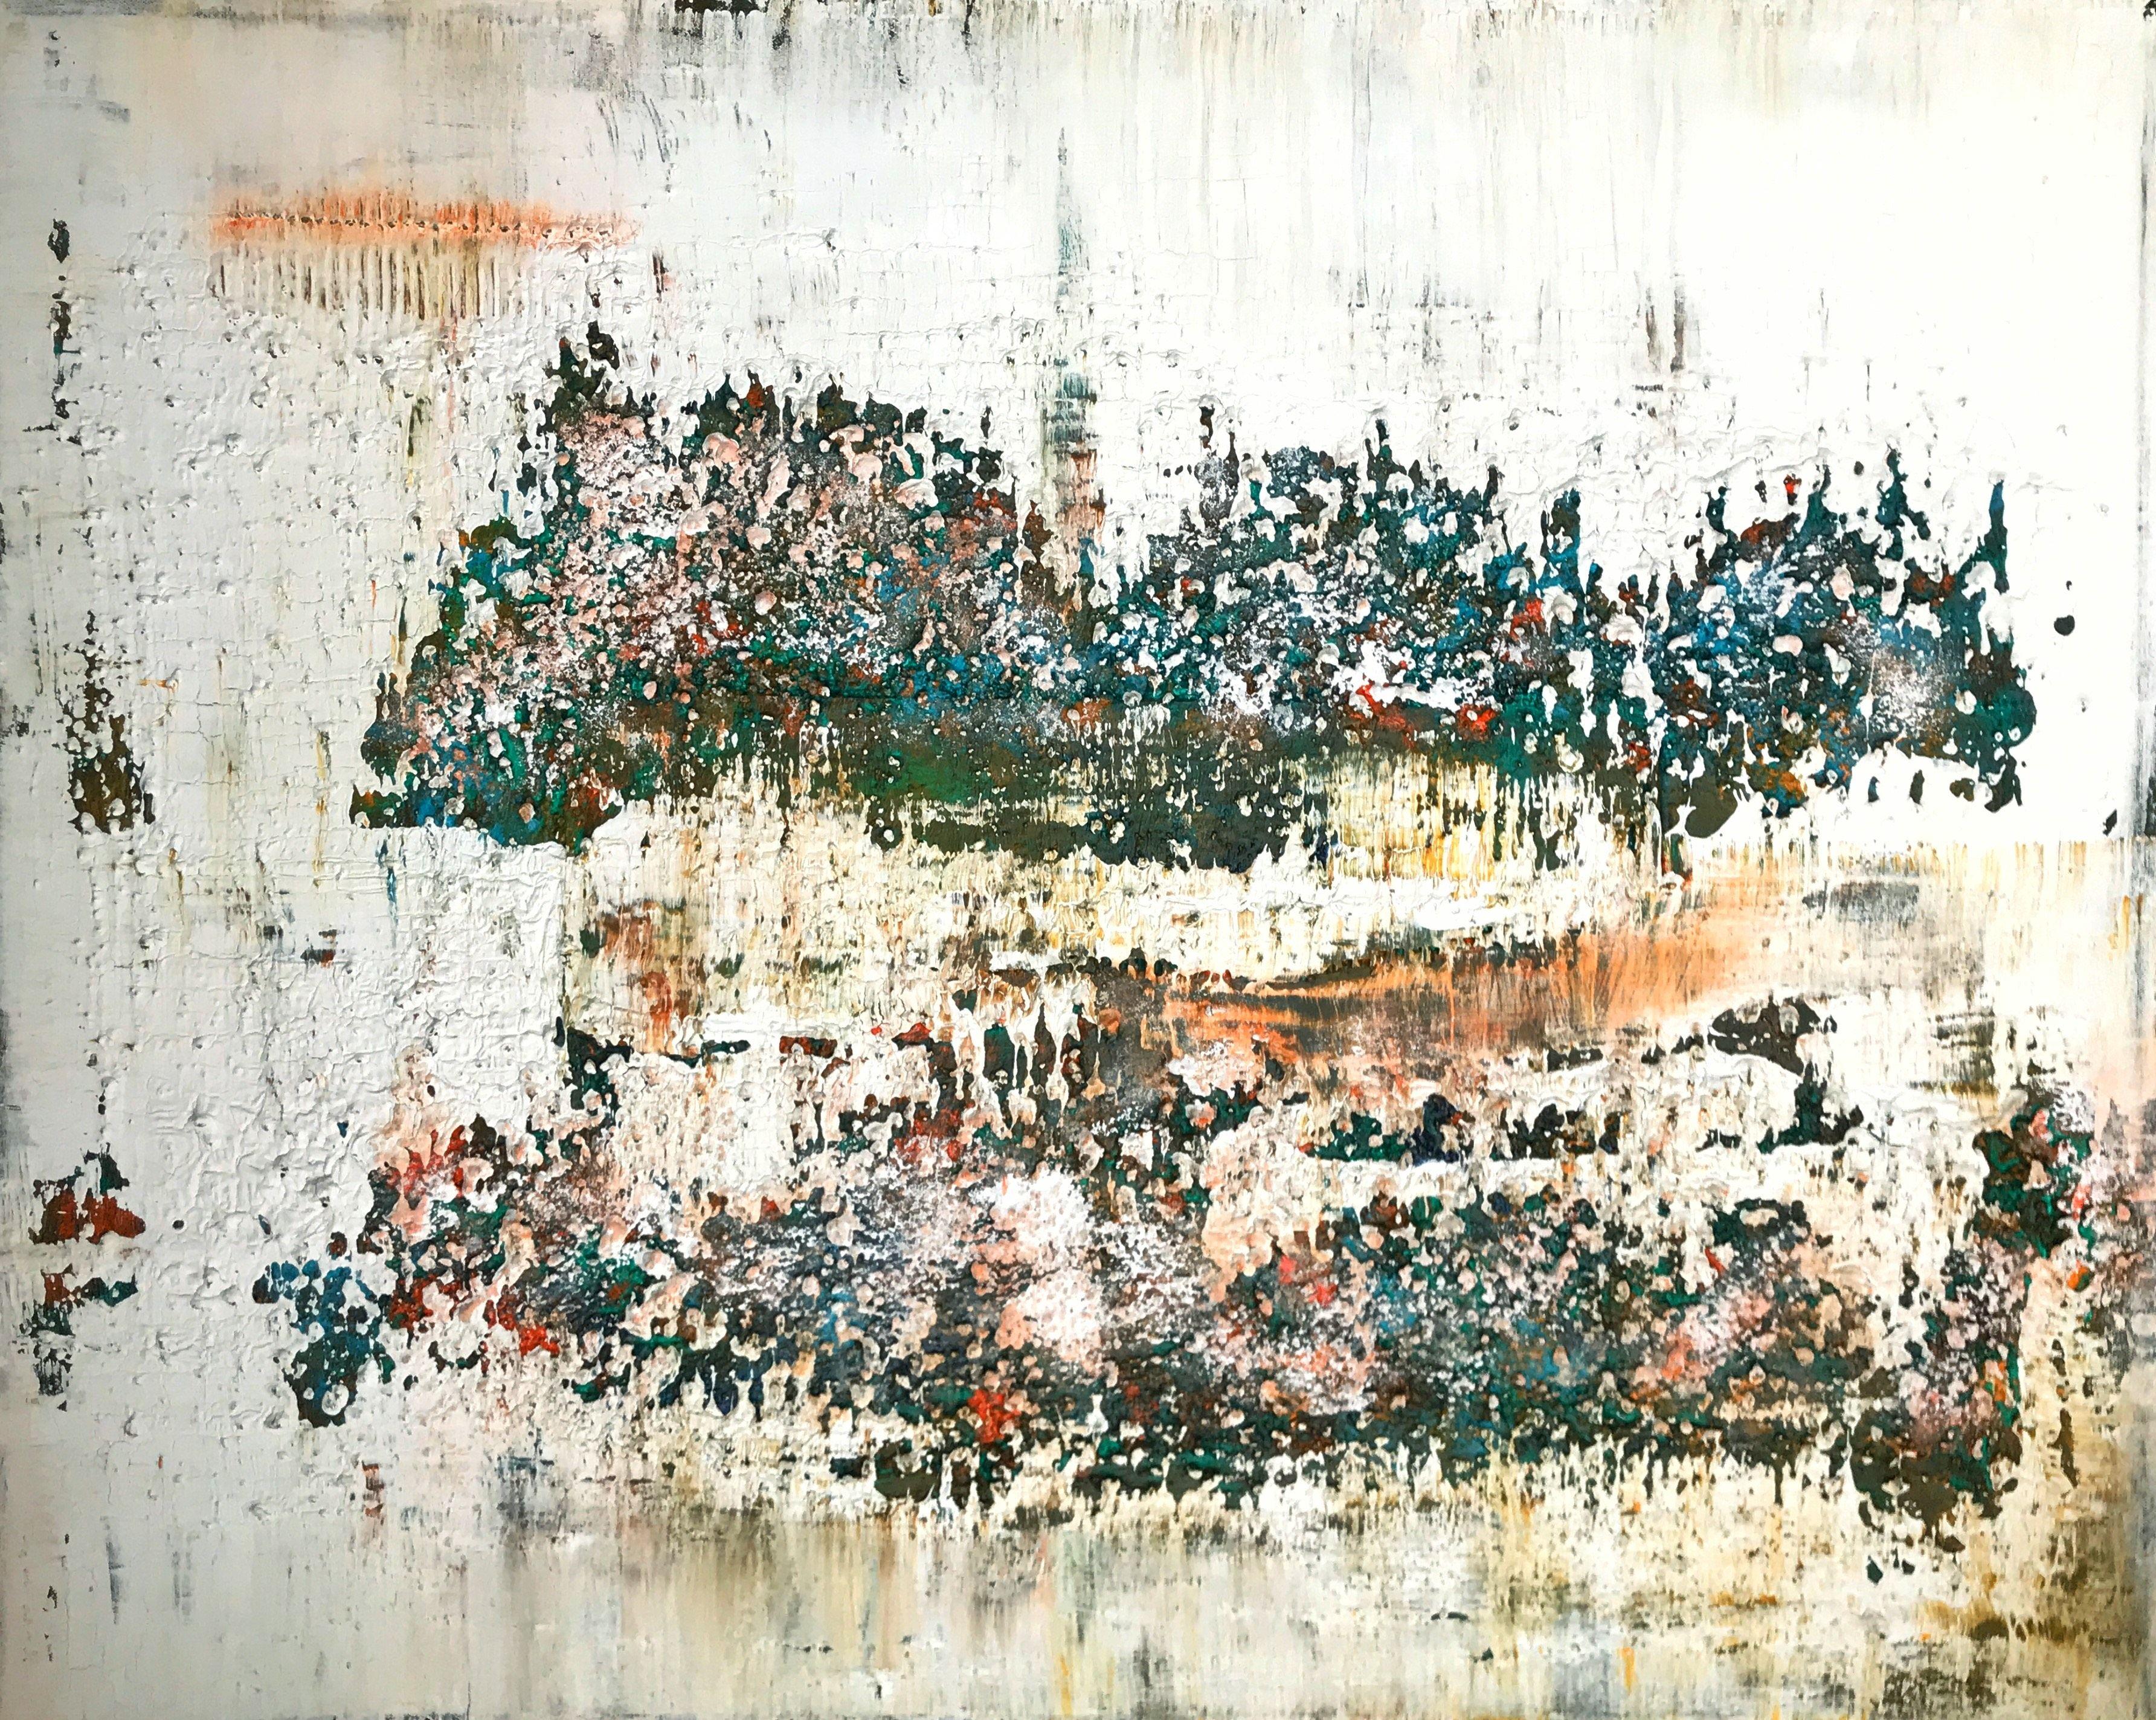 Abstract Painting 2120, Mixed Media on Canvas - Mixed Media Art by Sergio Aranda